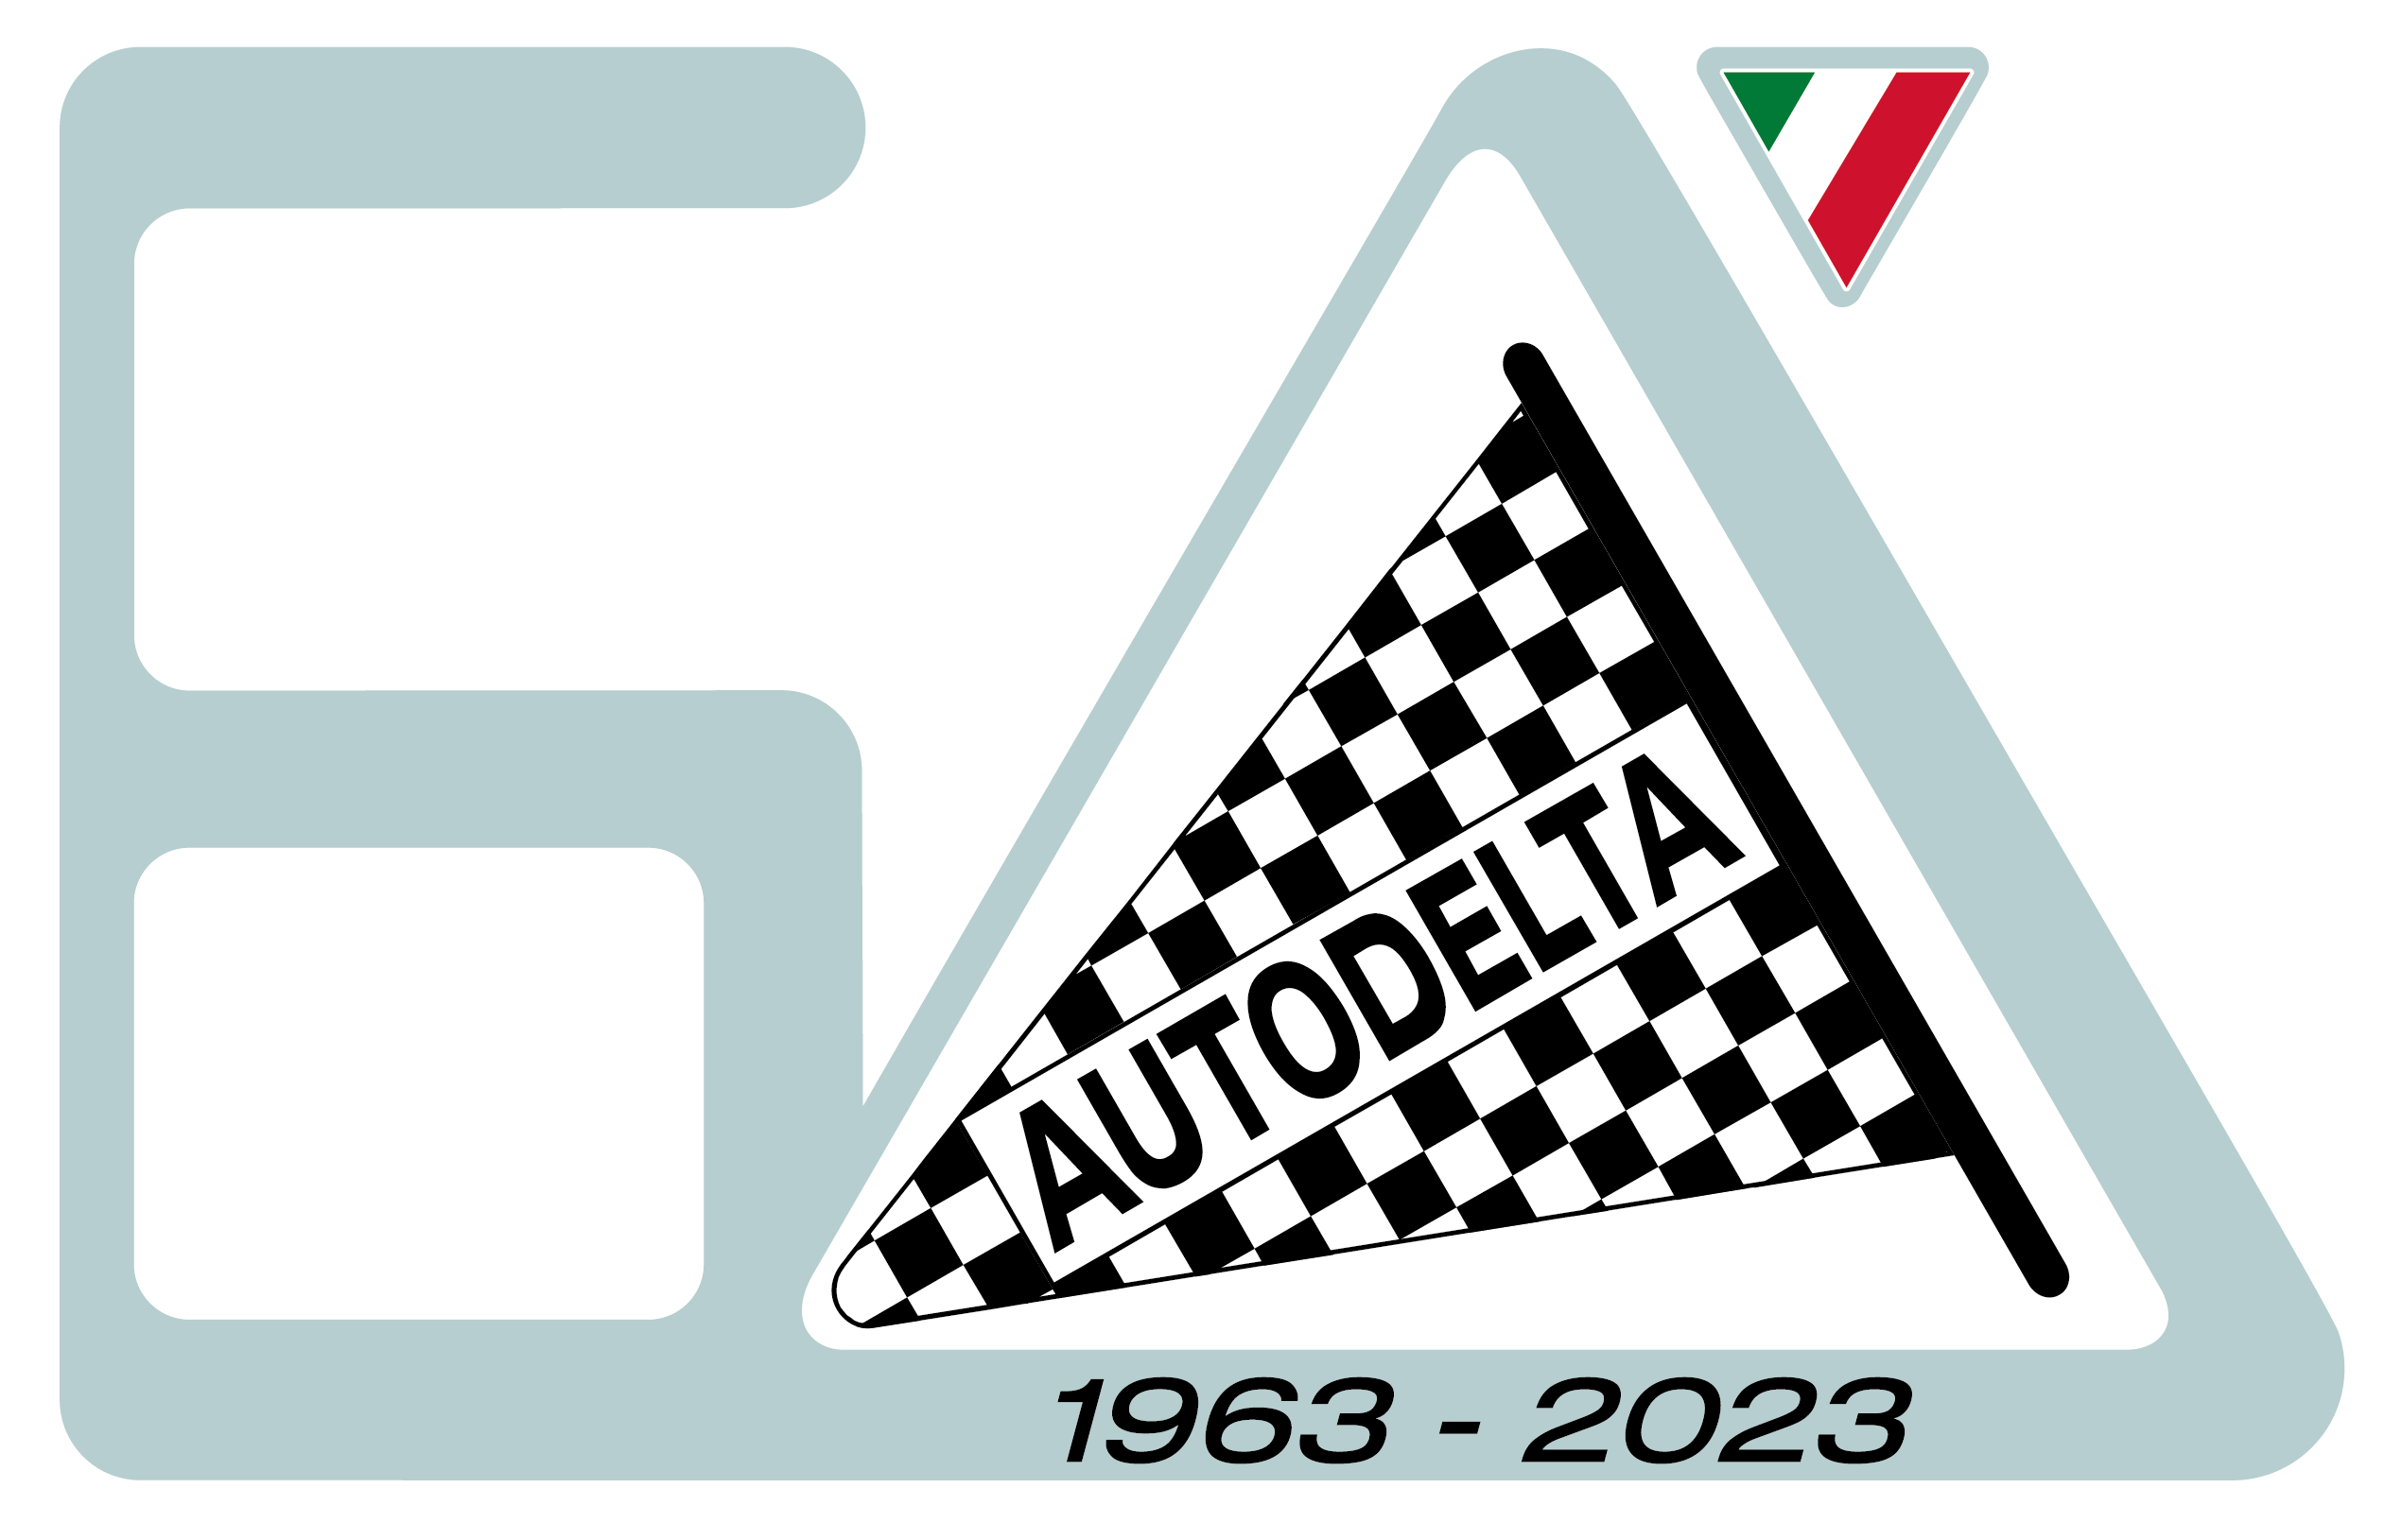 Autodelta anniversary logo